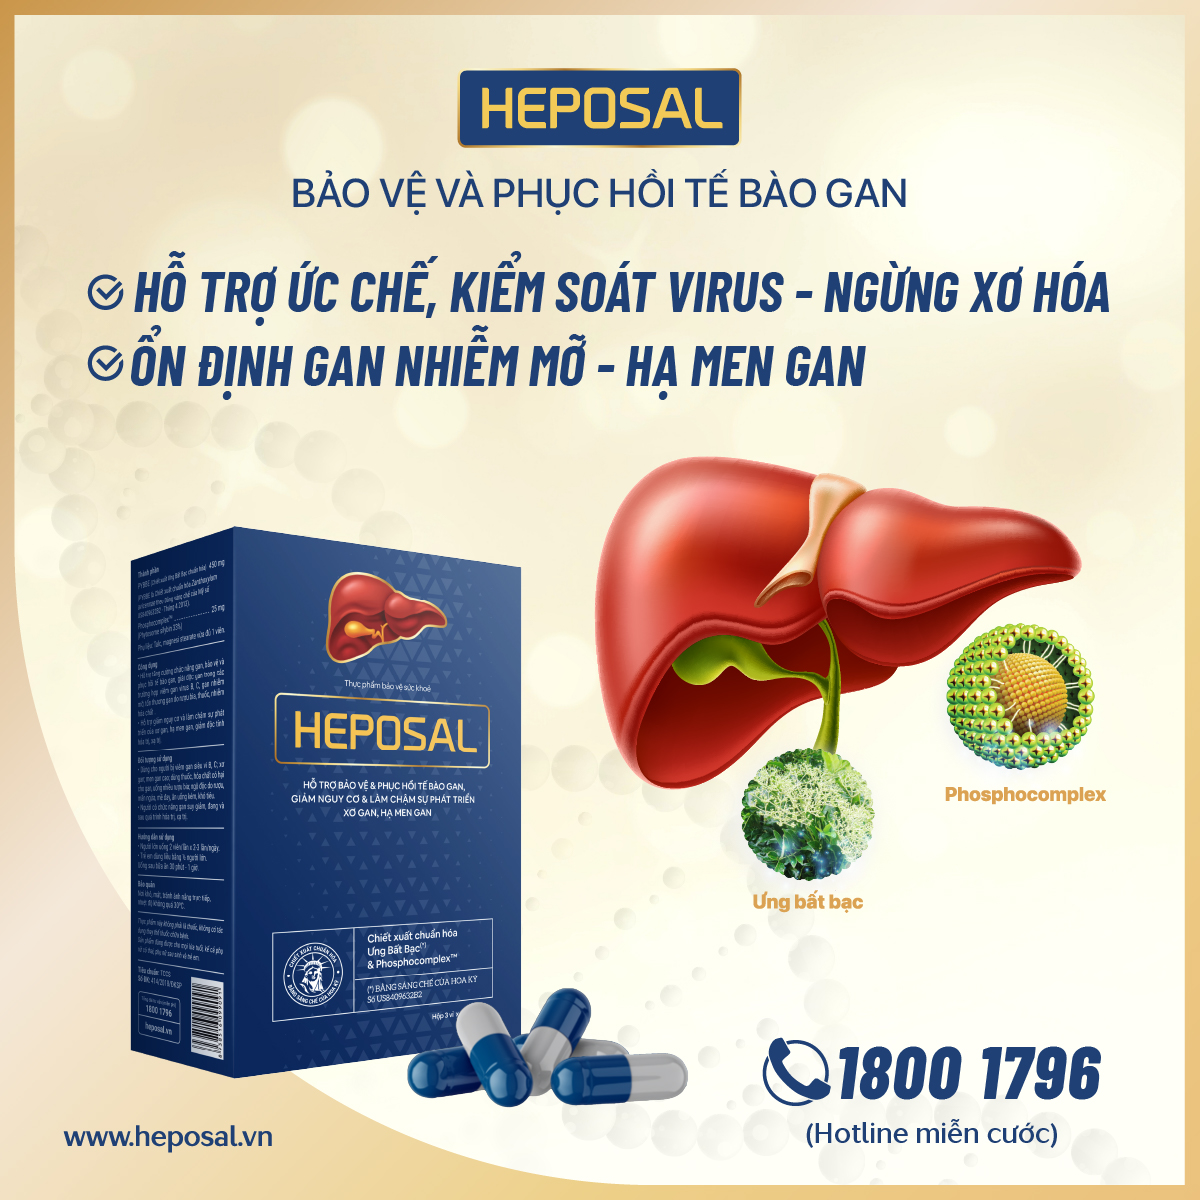 heposal cho người bệnh gan